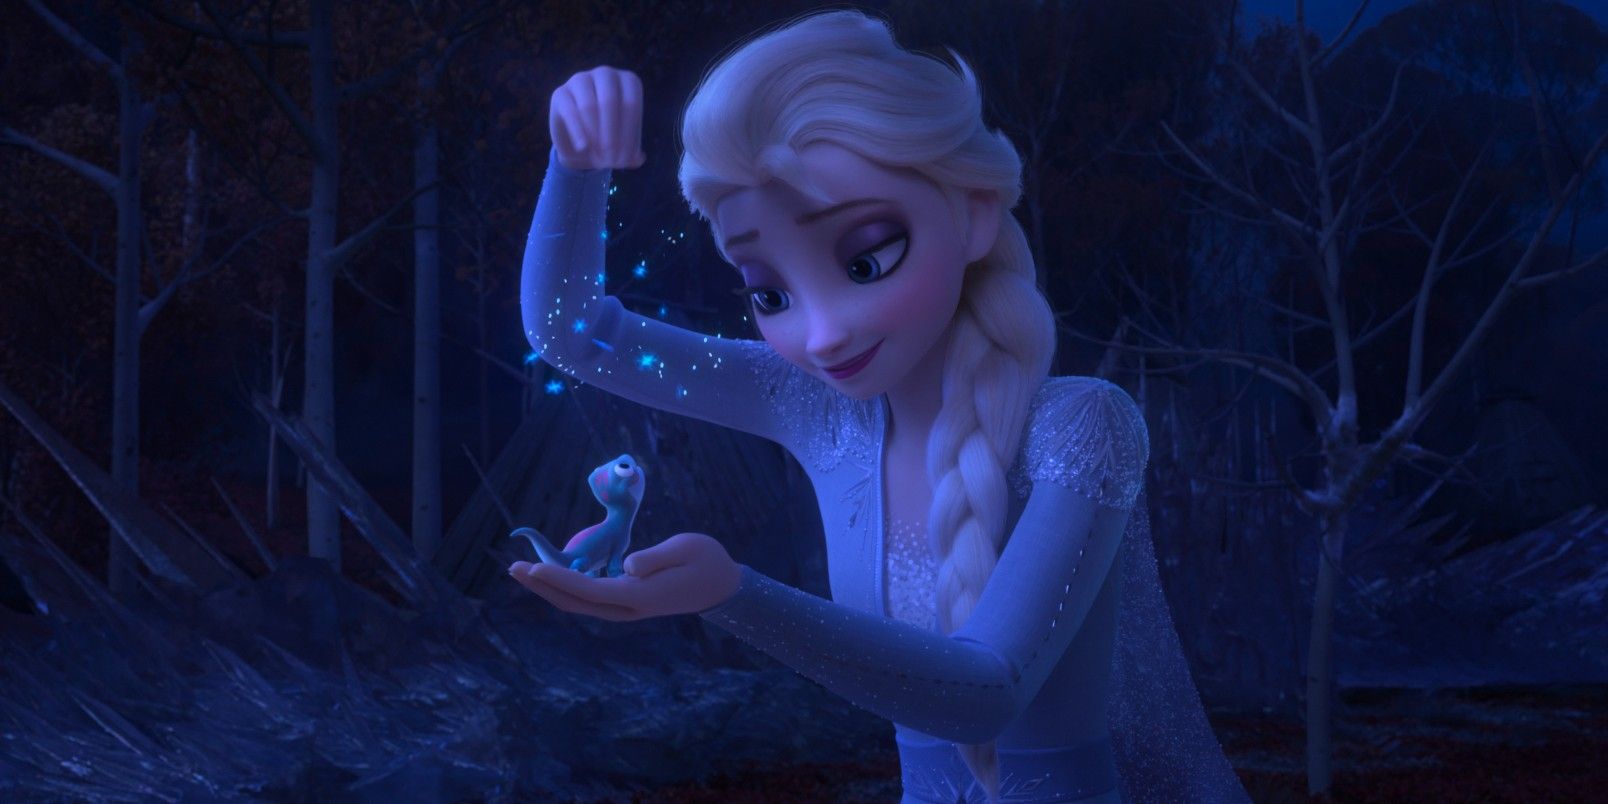 Elsa and Bruni in Frozen 2